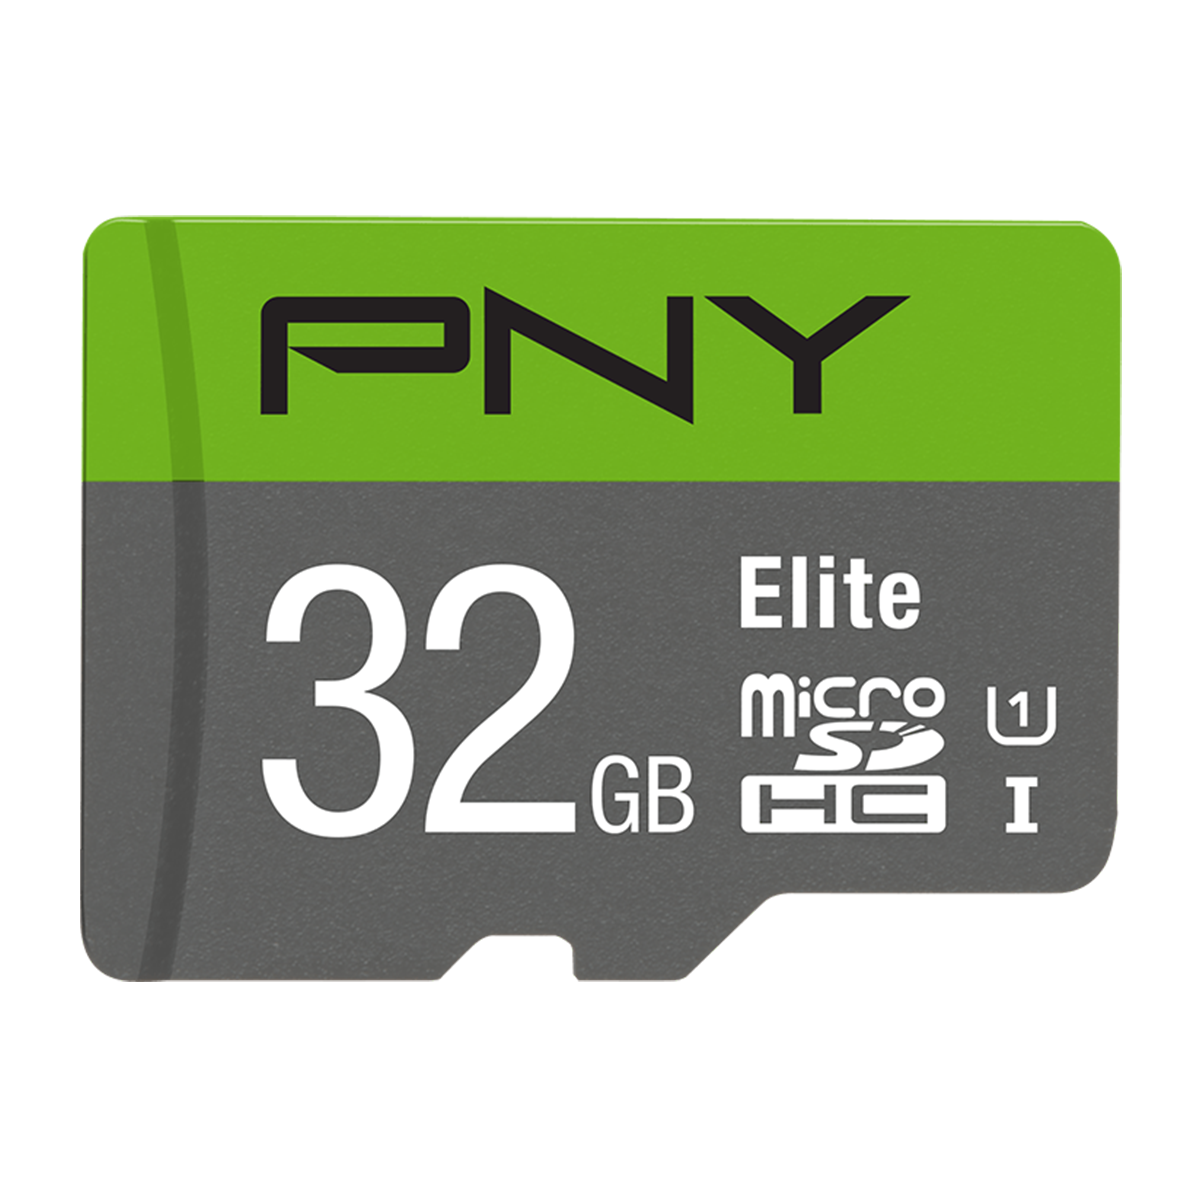 کارت حافظه MicroSDHC پی ان وای مدل Elite کلاس 10 استاندارد UHS-I سرعت 100MBps ظرفیت 32 گیگابایت